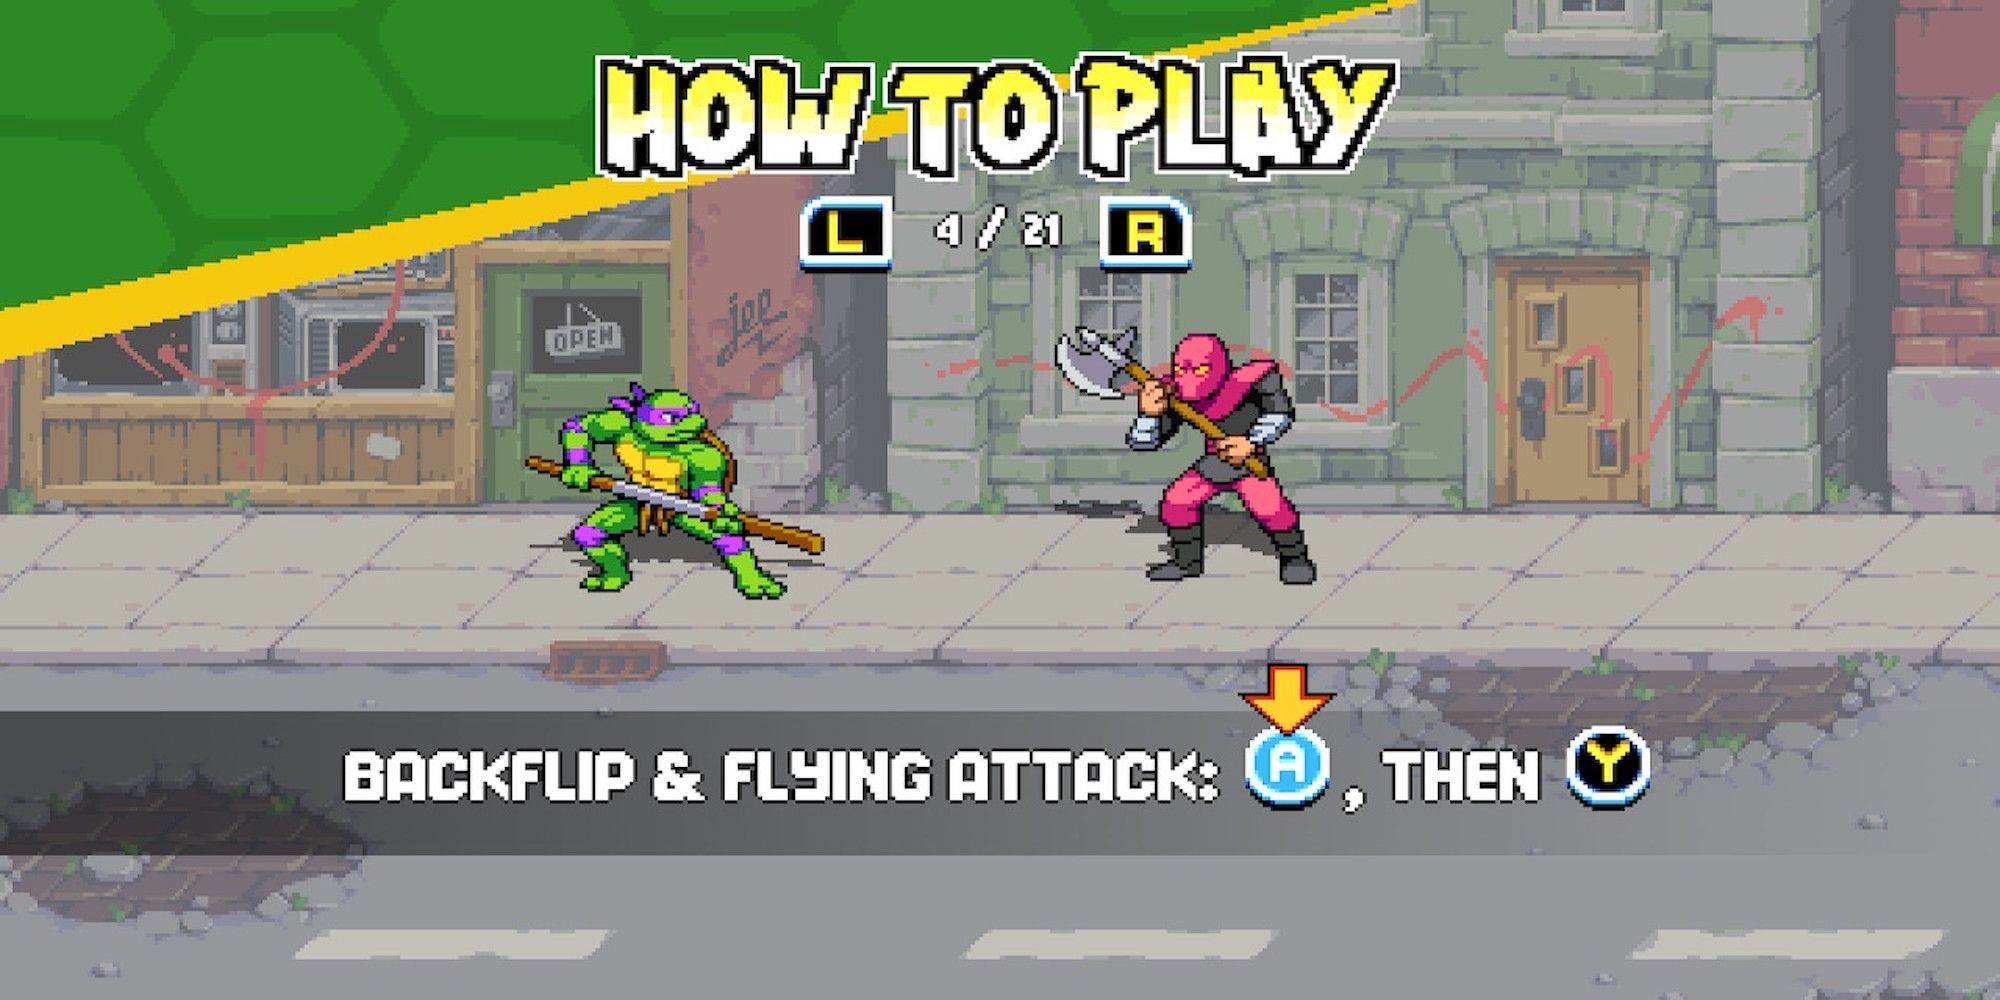 The tutorial menu in Teenage Mutant Ninja Turtles Shredder's Revenge